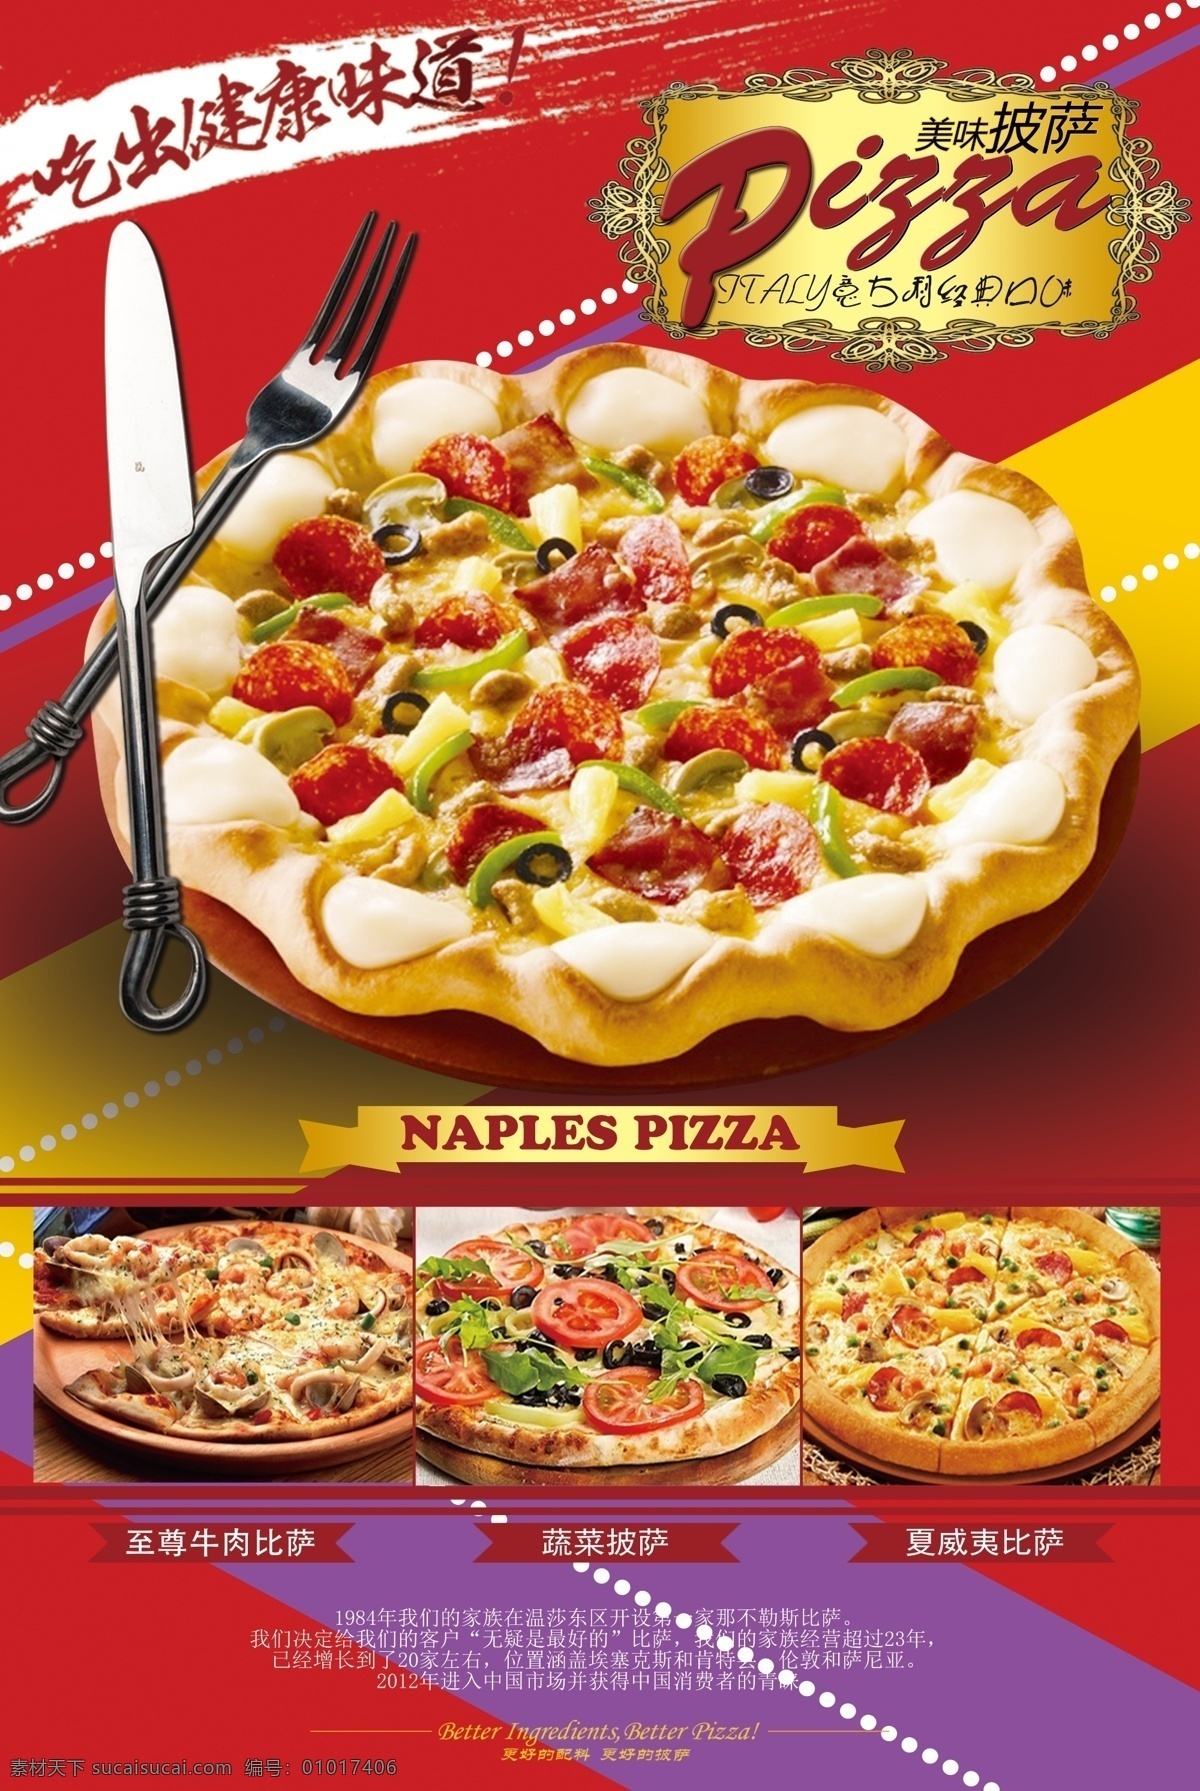 披萨美食海报 美食味披萨 食品海报 食品广告 宣传海报 特色美食 美食节海报 美食海报 美食海报素材 美食 海报 美食漫画 广告海报 展板模板